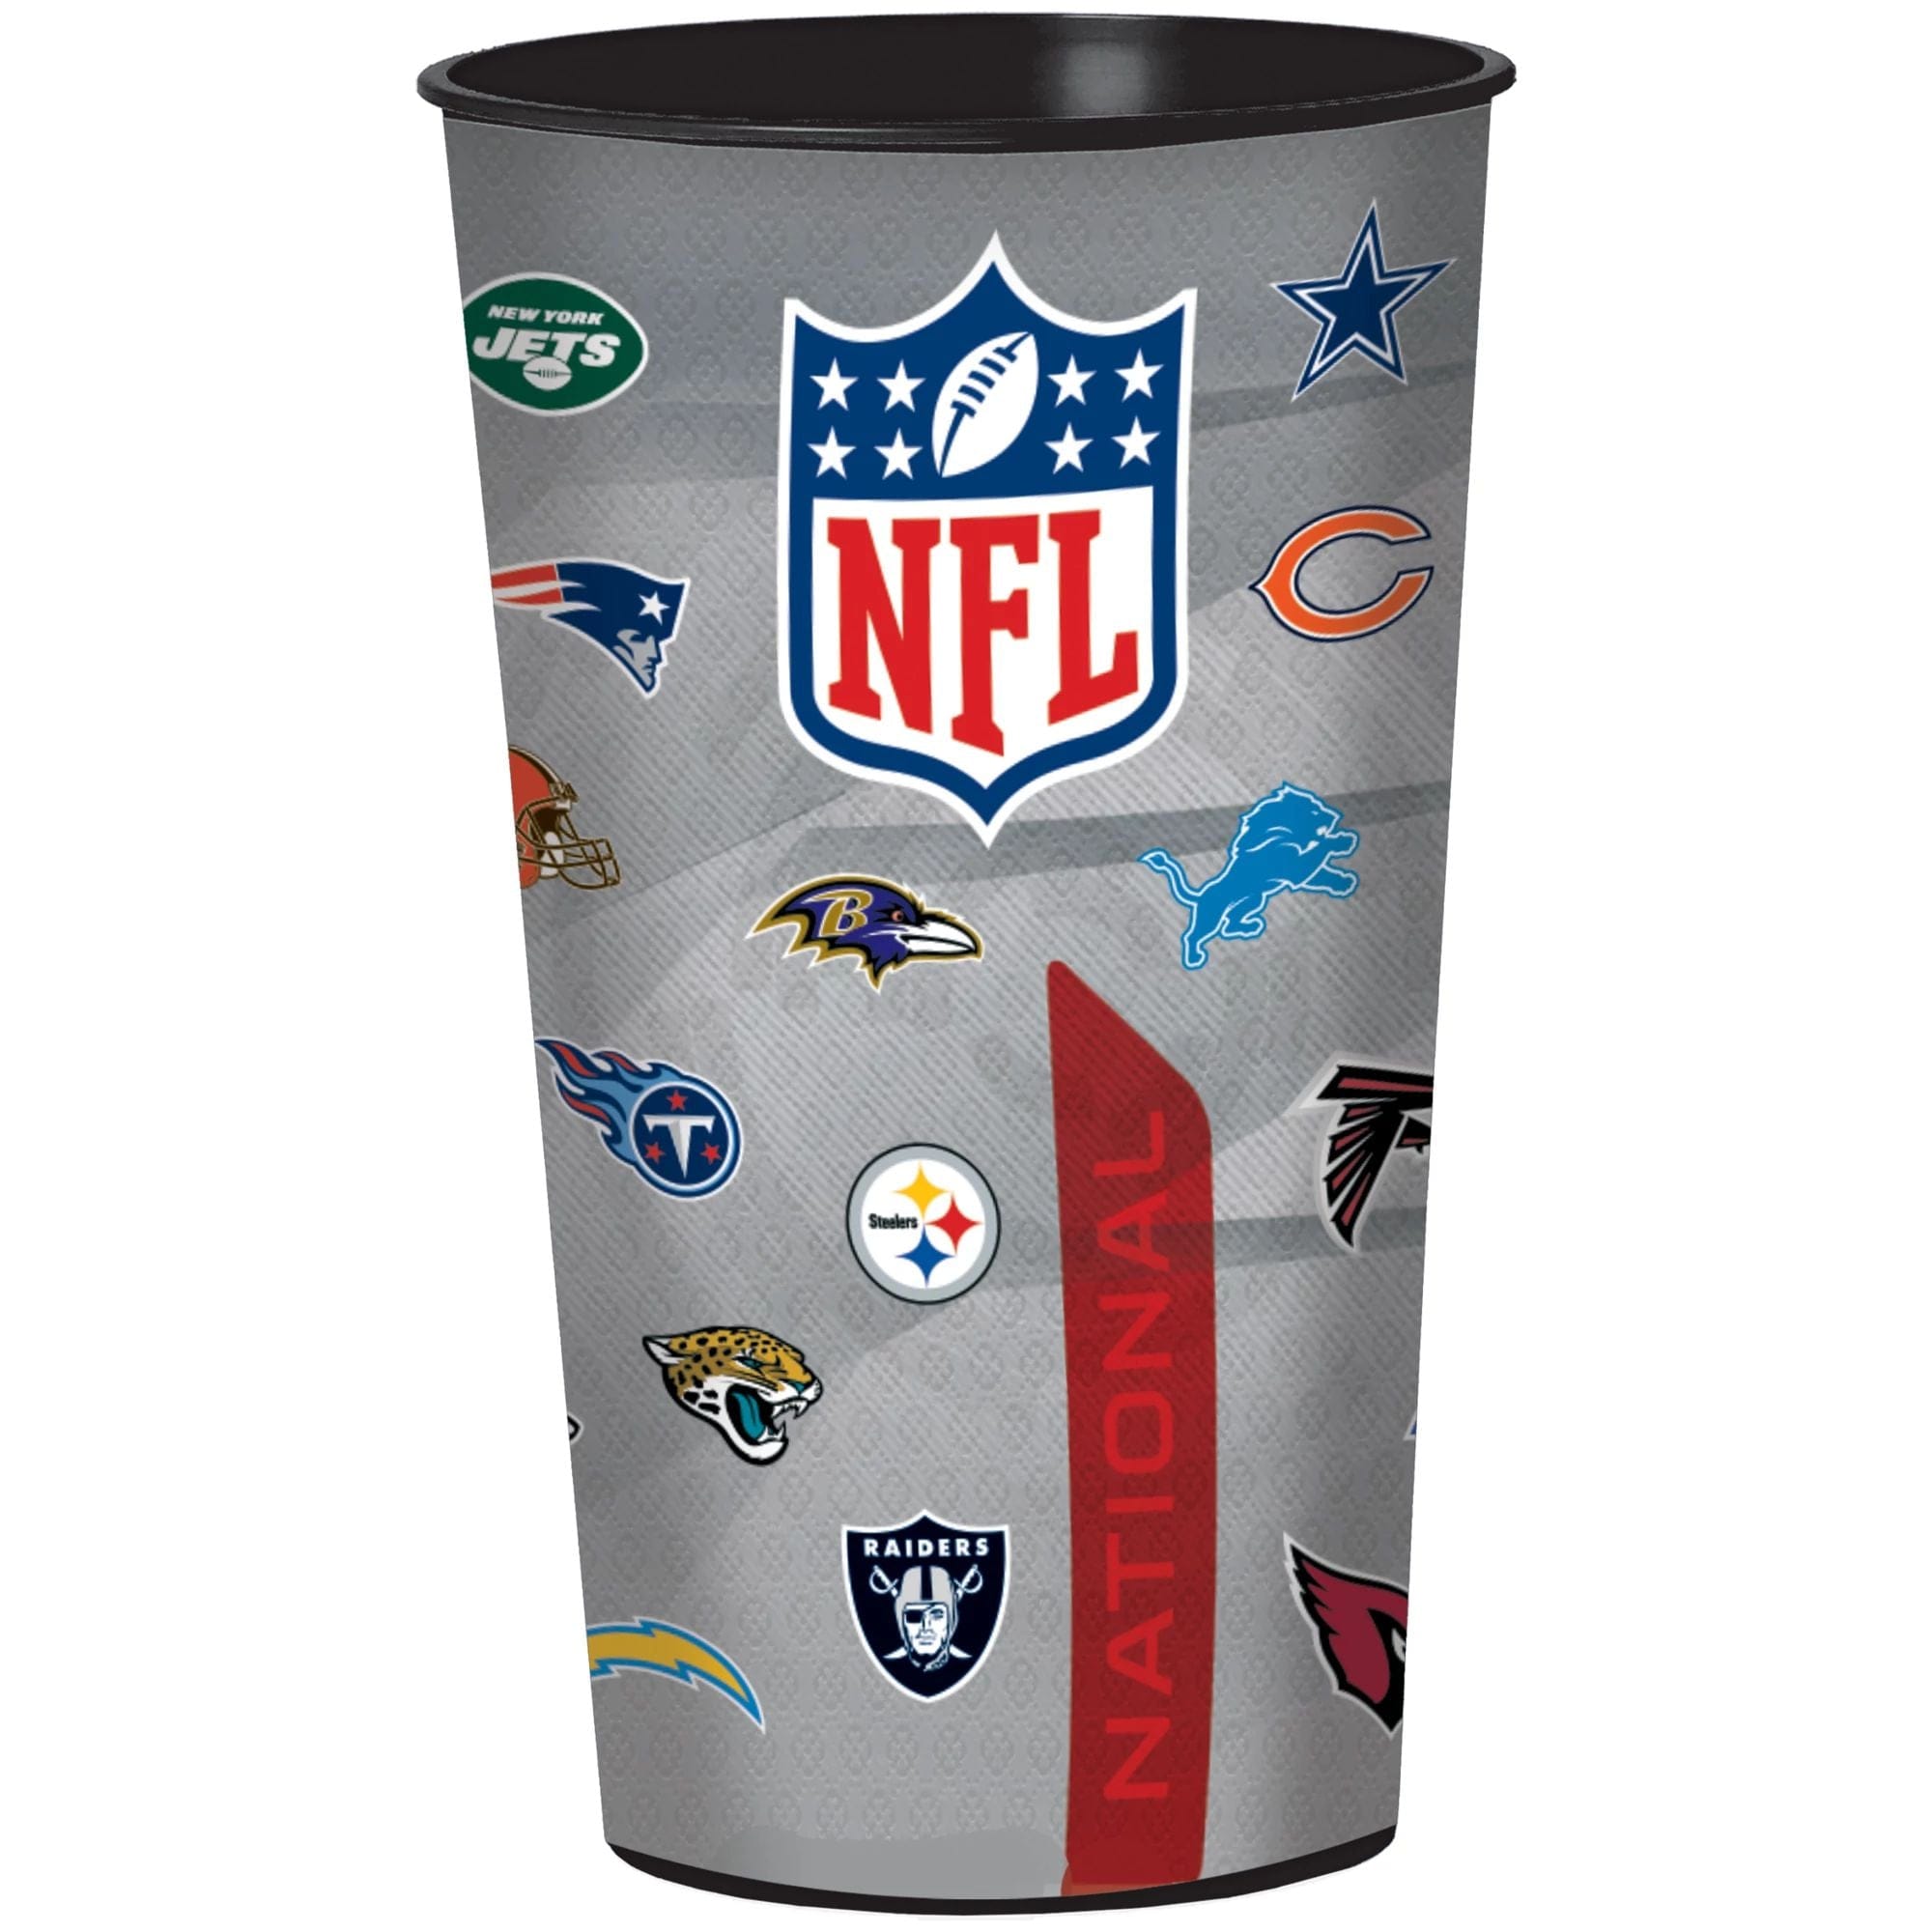 NFL Team Cups Vending Capsules 